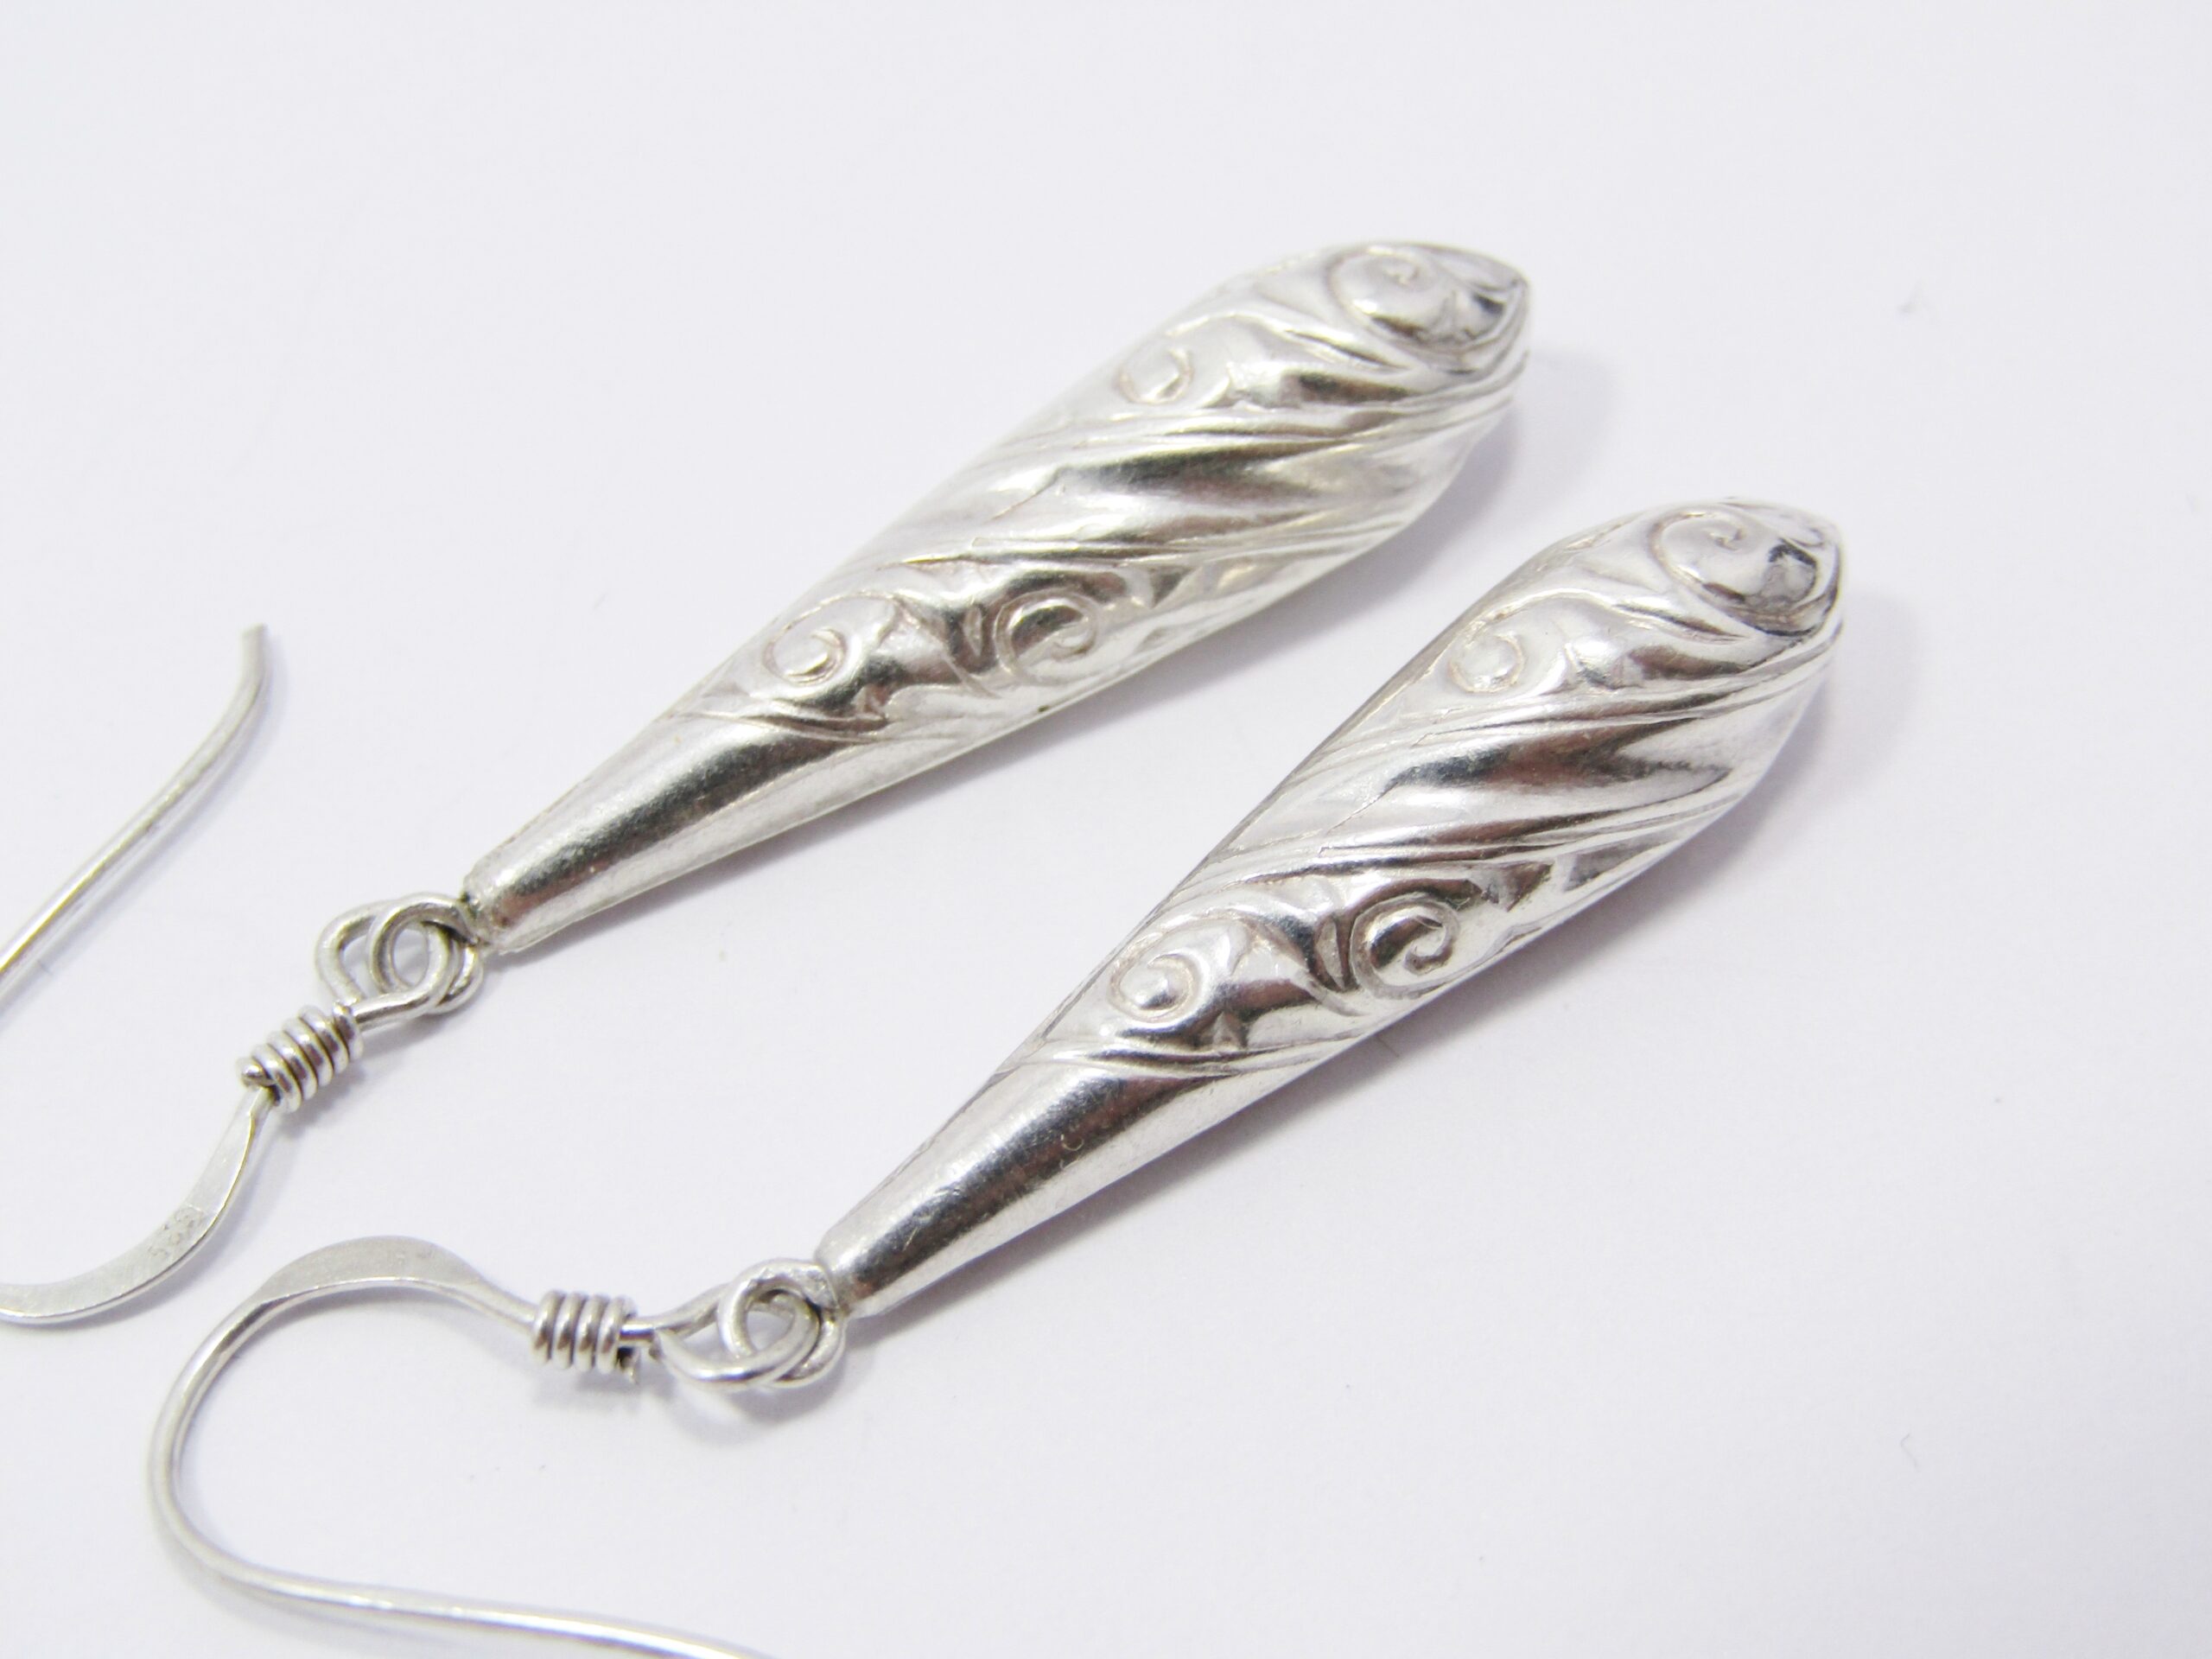 A Beautiful Pair of Vintage Design Drop Earrings in Sterling Silver.